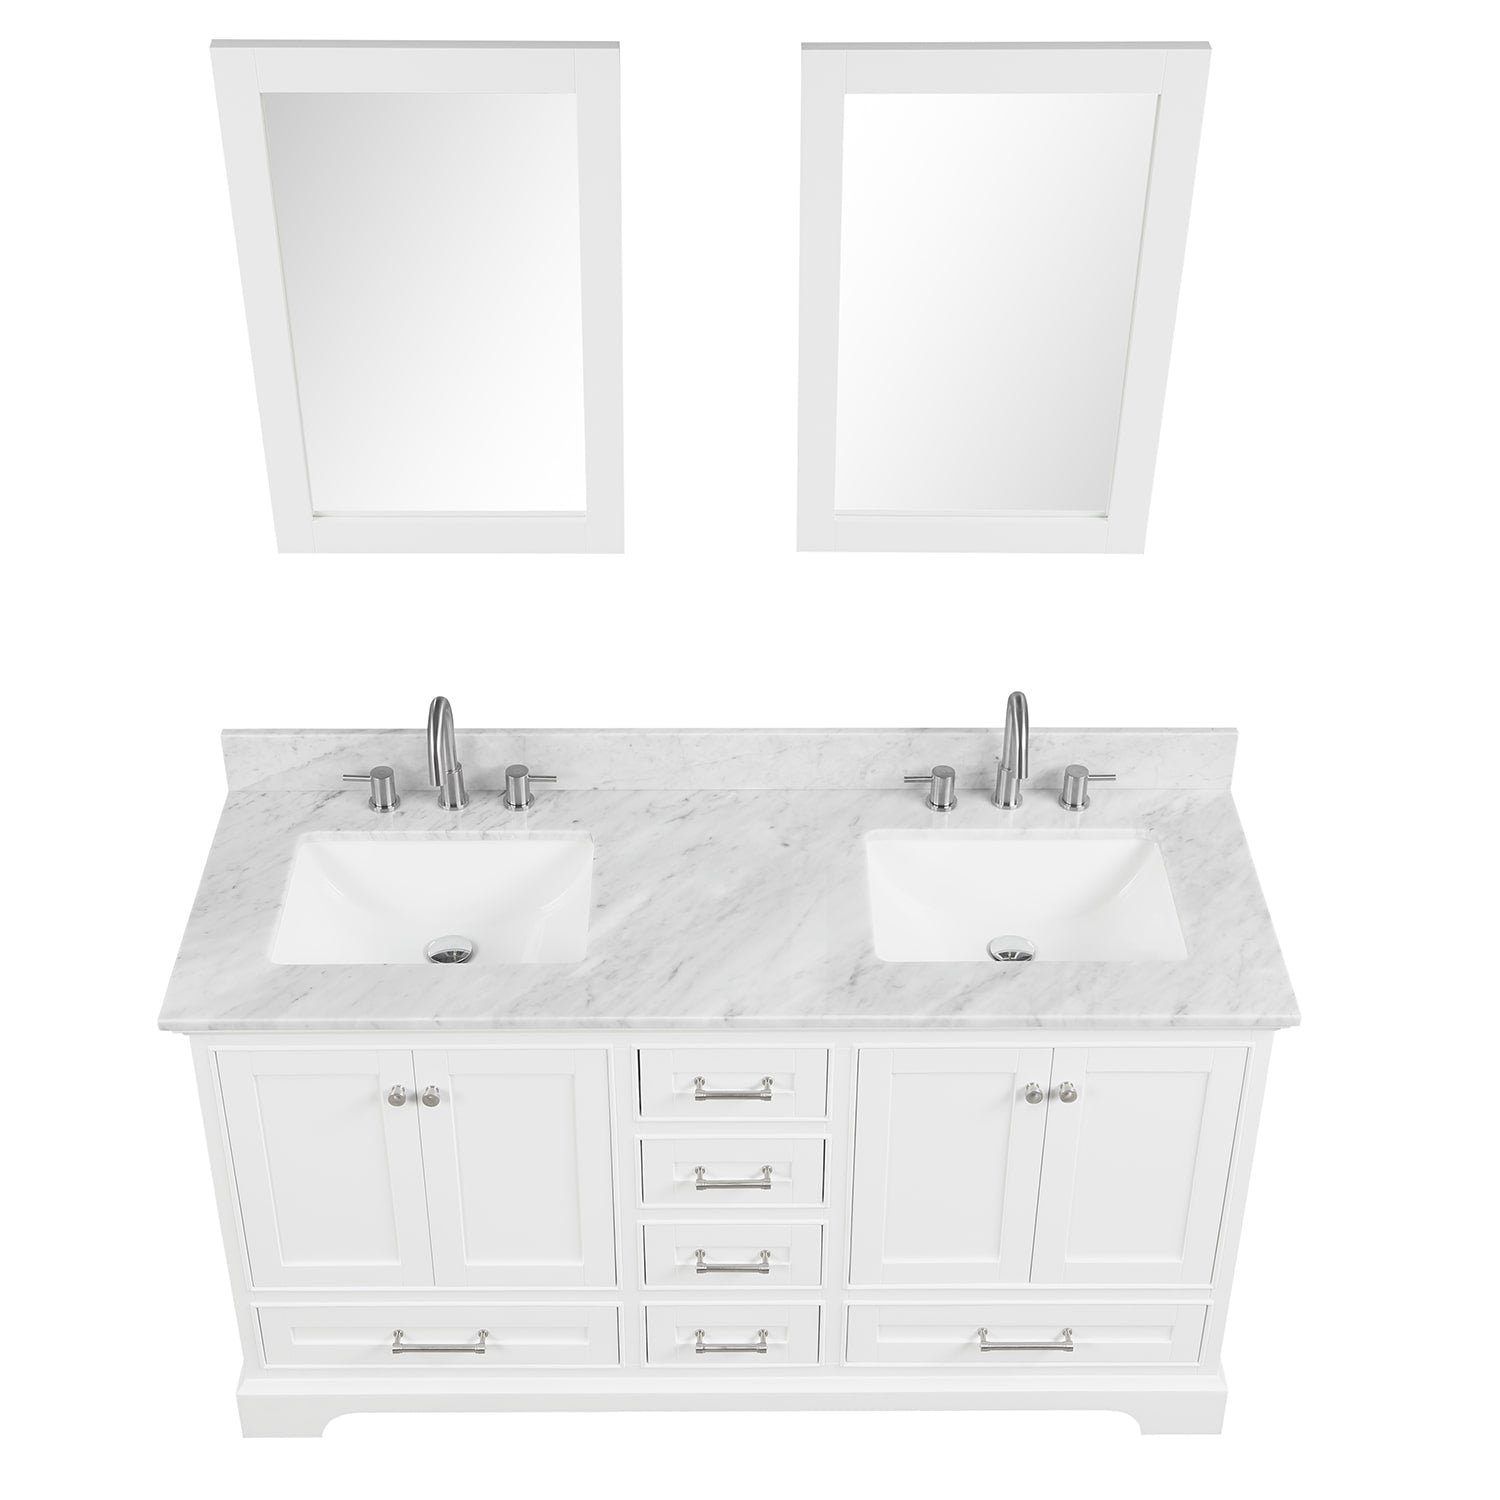 Copenhagen 60″ Bathroom Vanity with Marble Countertop - Contemporary Bathroom Vanity